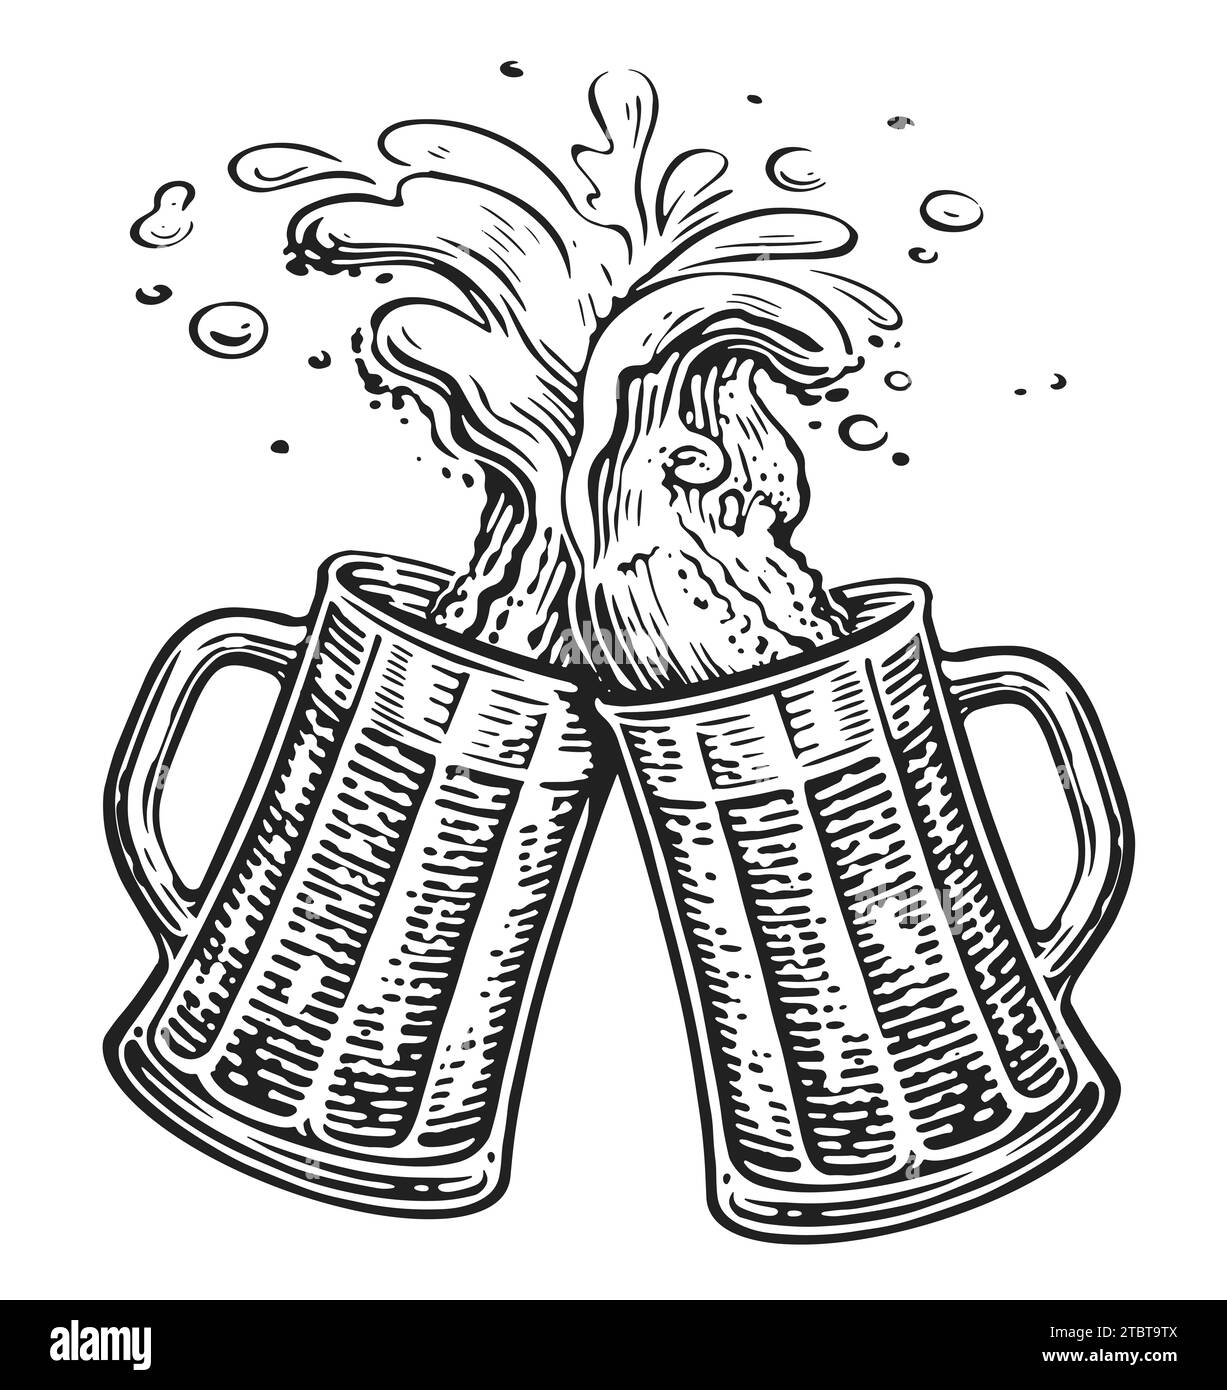 Zwei Bierbecher zum Toasten, Cheers. Oktoberfest, klirrende Glastanker voller Bier und spritzendem Schaum Stockfoto